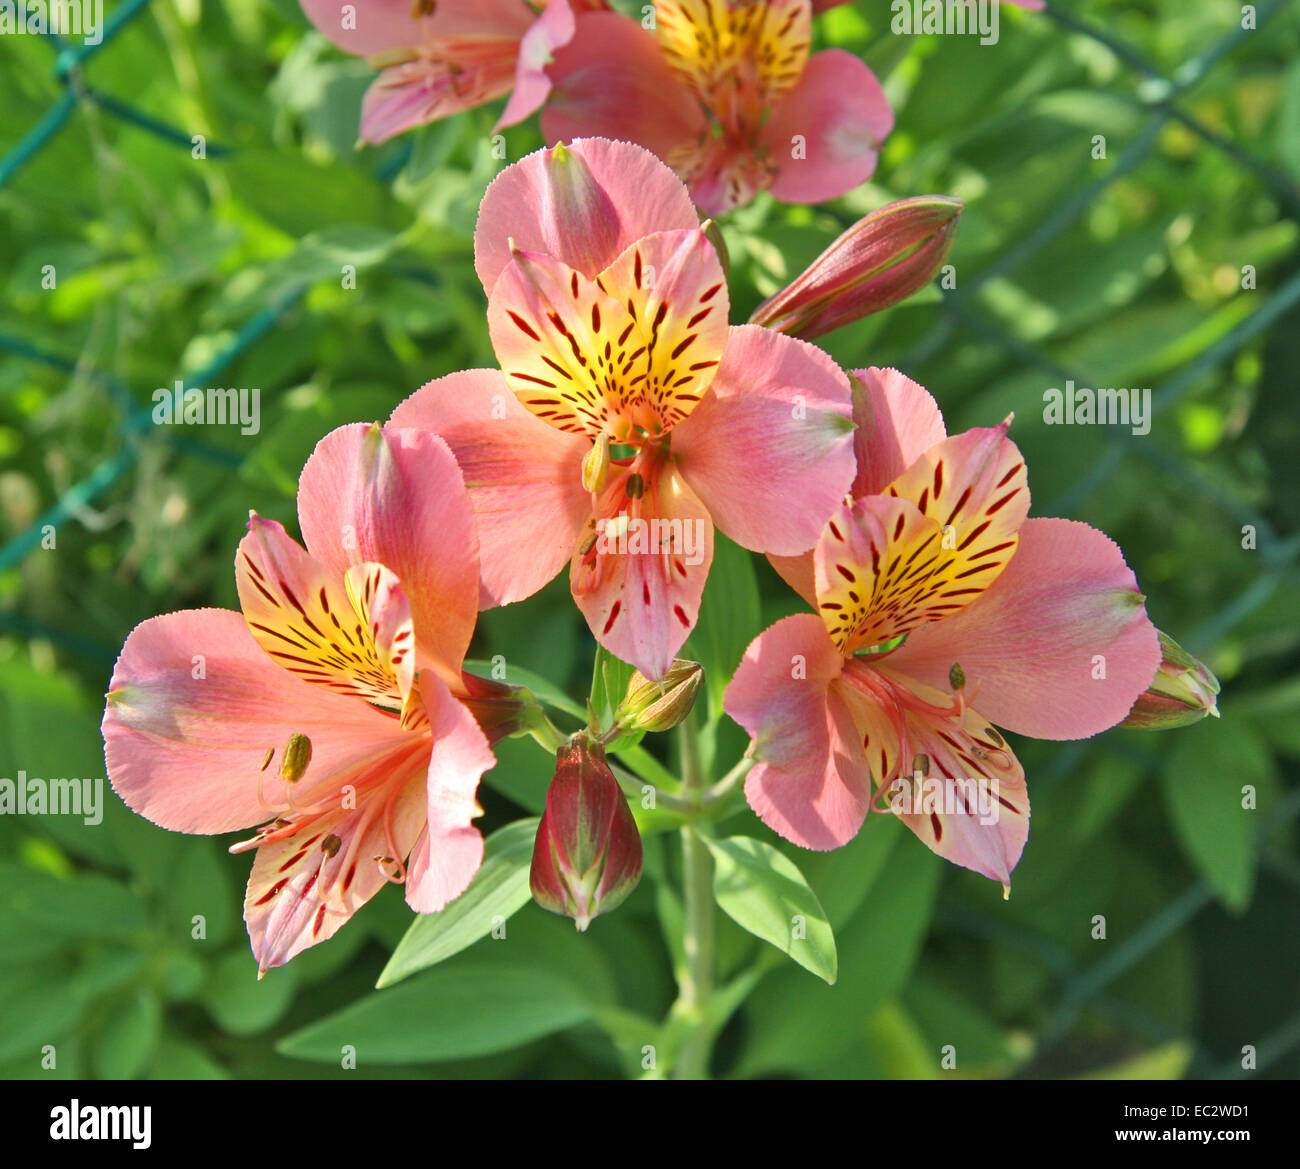 Alstroemeria. Alstroemeria "Saturne". Peruanische Lilie oder Lilie der Inkas. Stockfoto